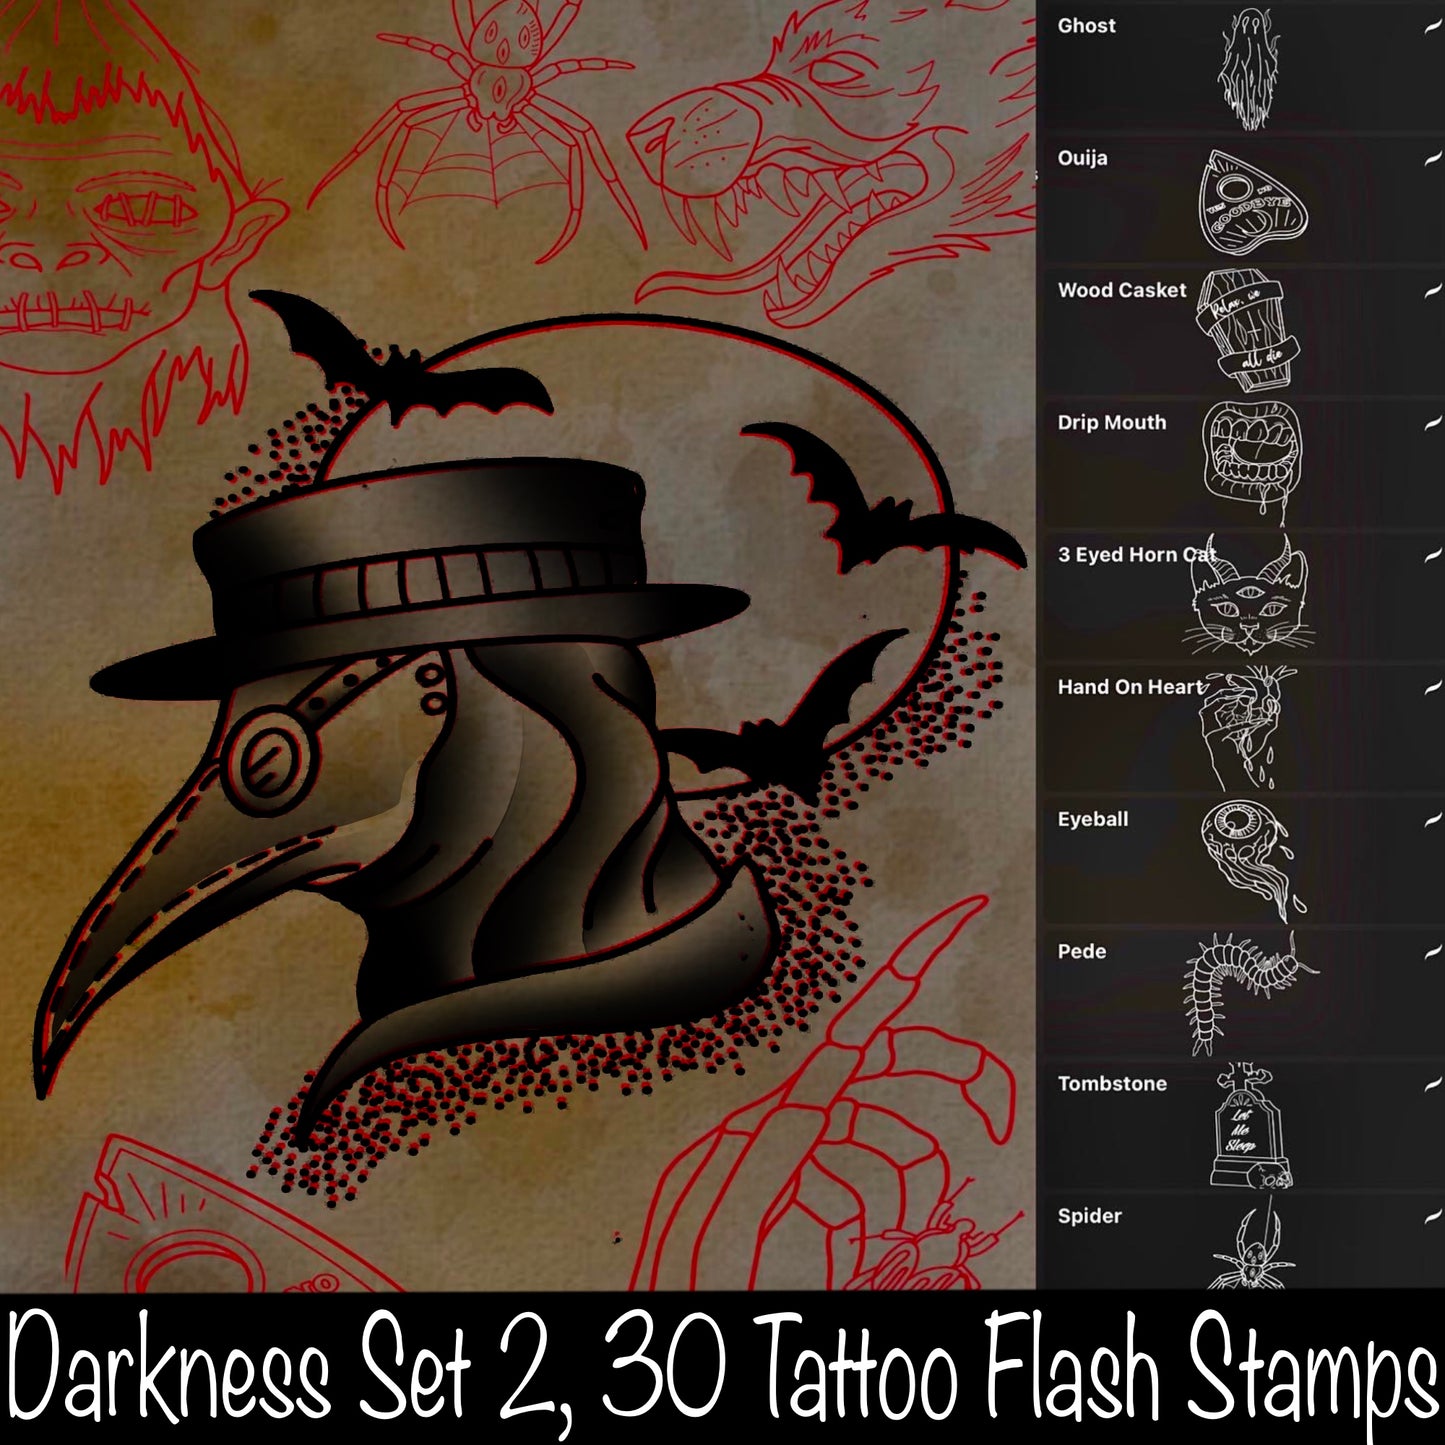 Darkness Set 2, 30 Tattoo Flash Stamps